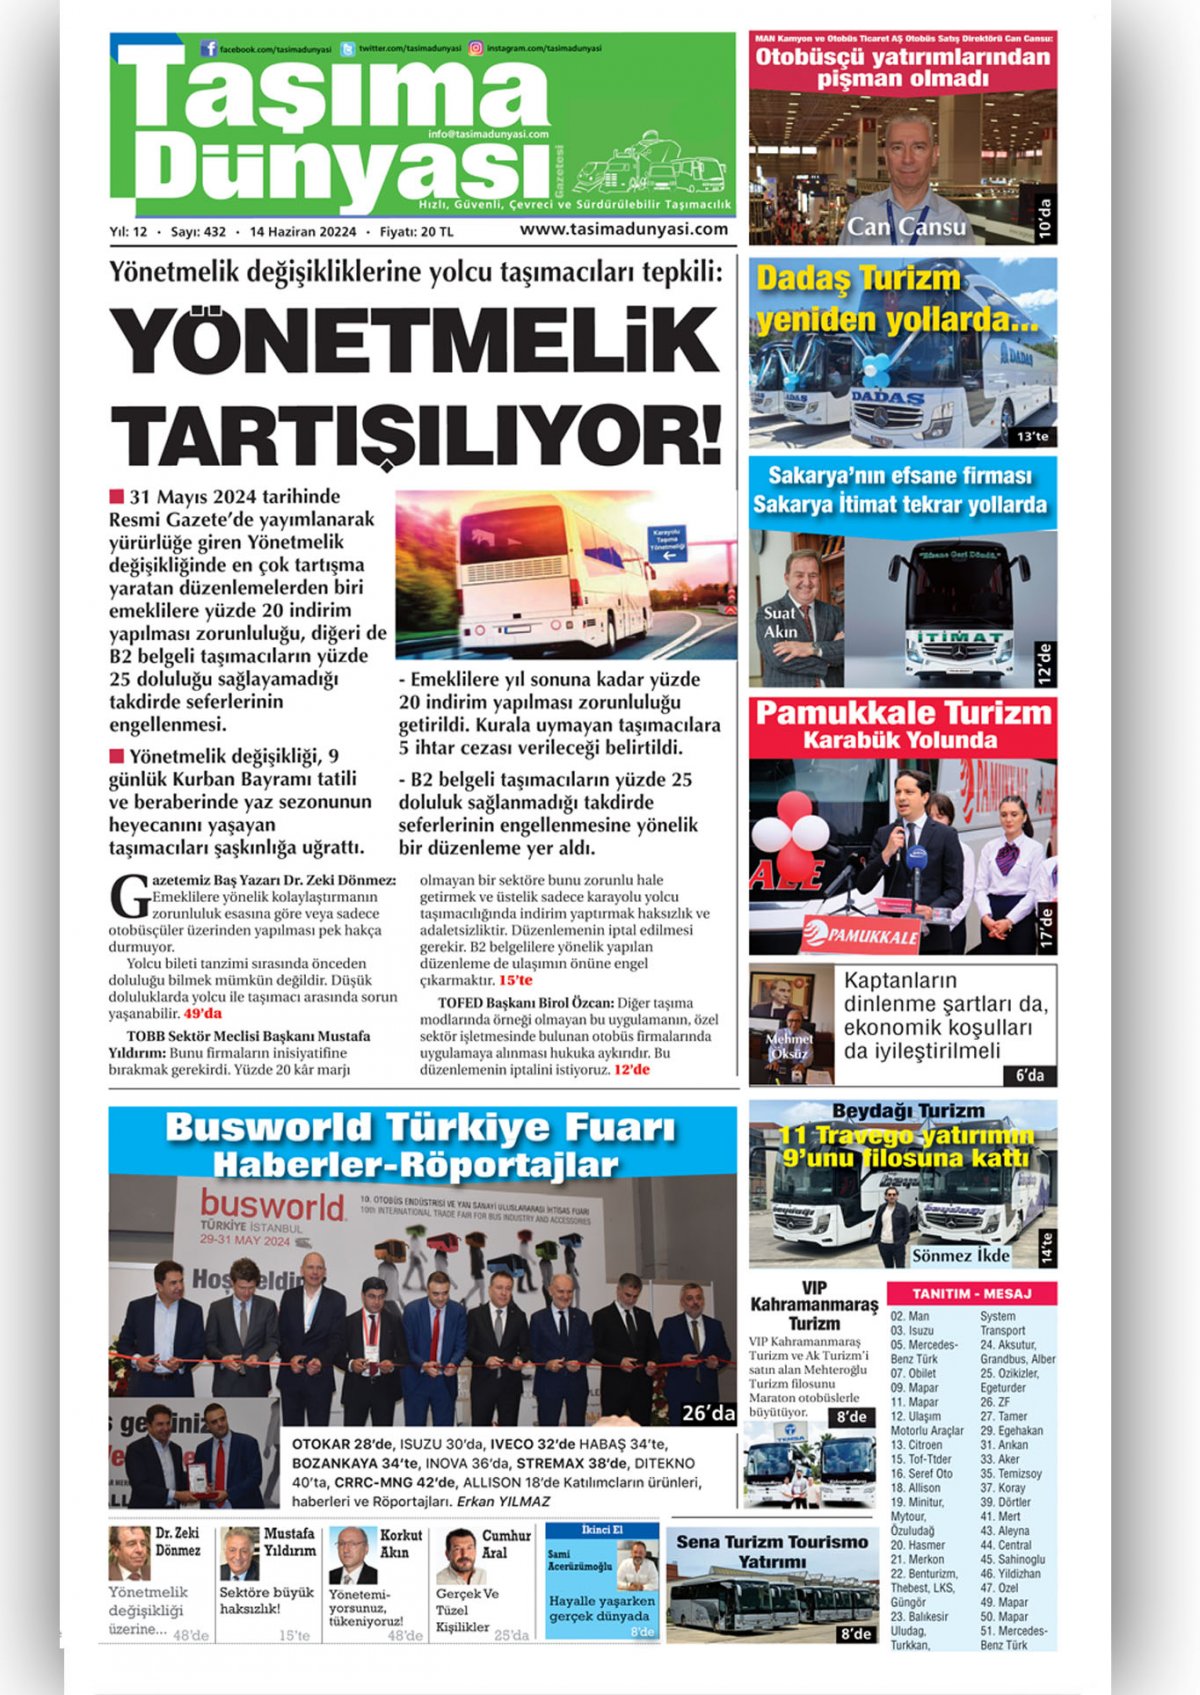 Taşıma Dünyası Gazetesi - 14.06.2024 Manşeti